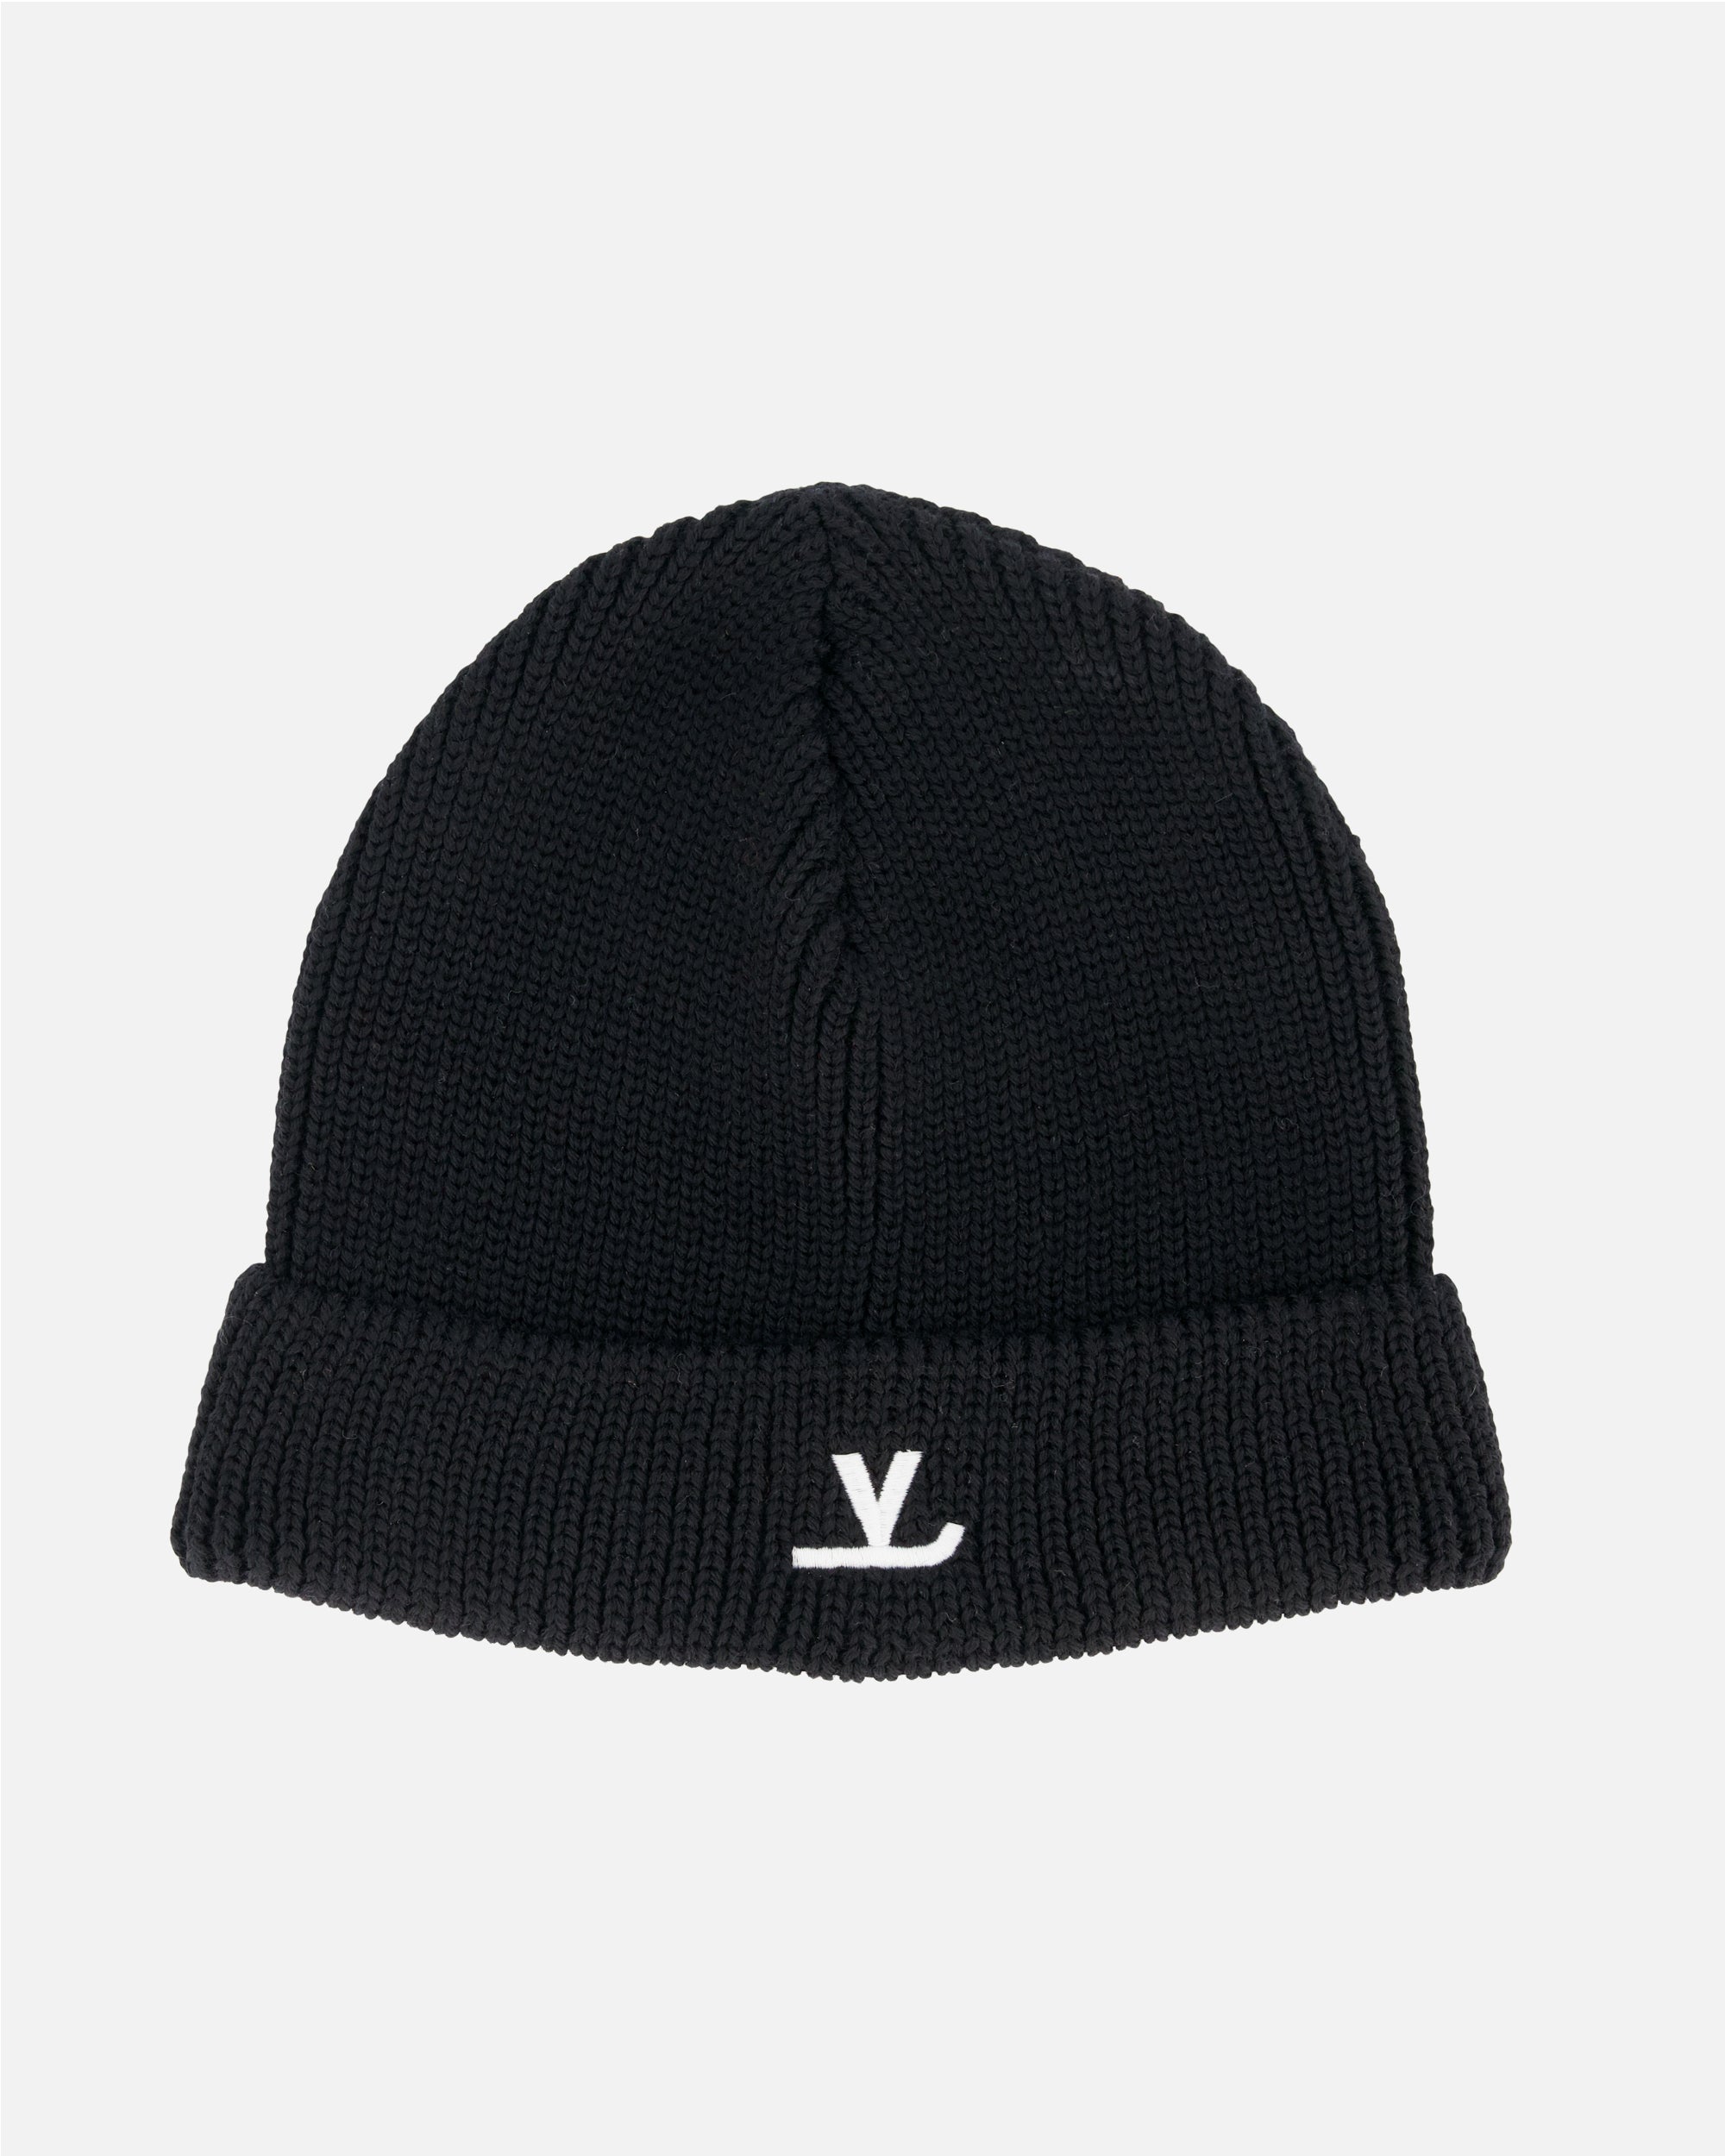 Shop Louis Vuitton Men's Grey Knit Hats